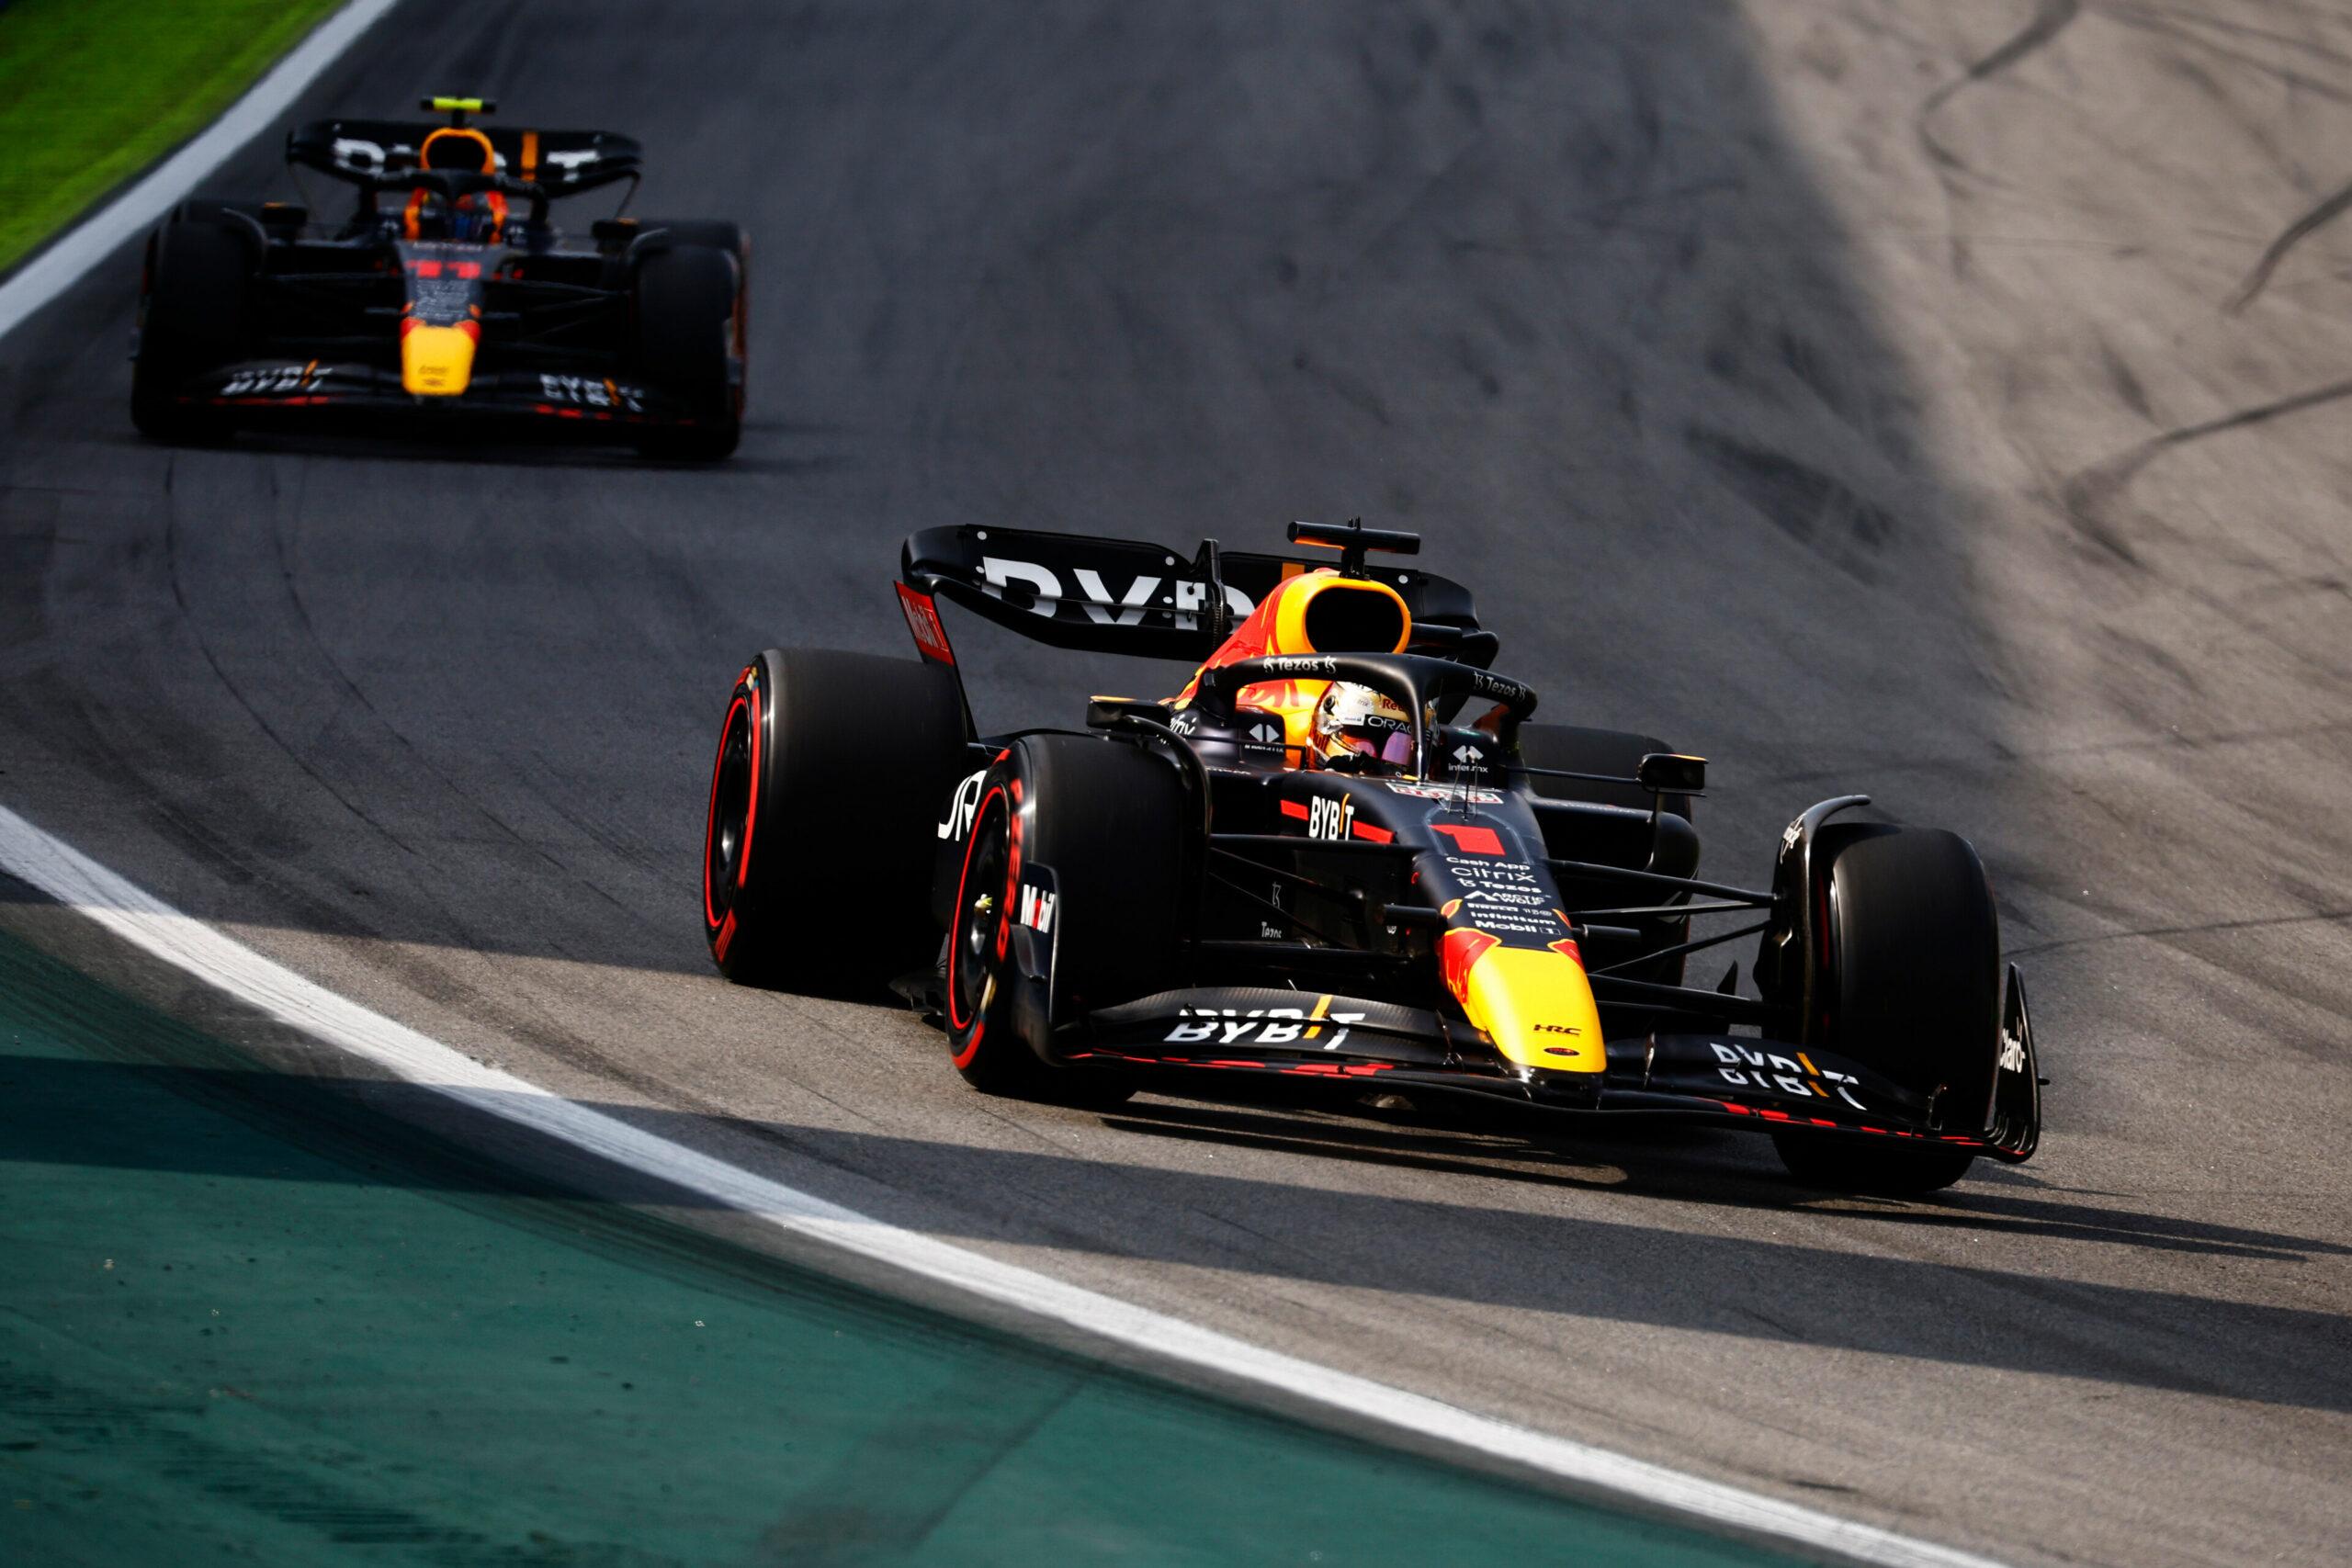 Verstappen crava a pole no GP dos EUA, onde buscará vitória inédita